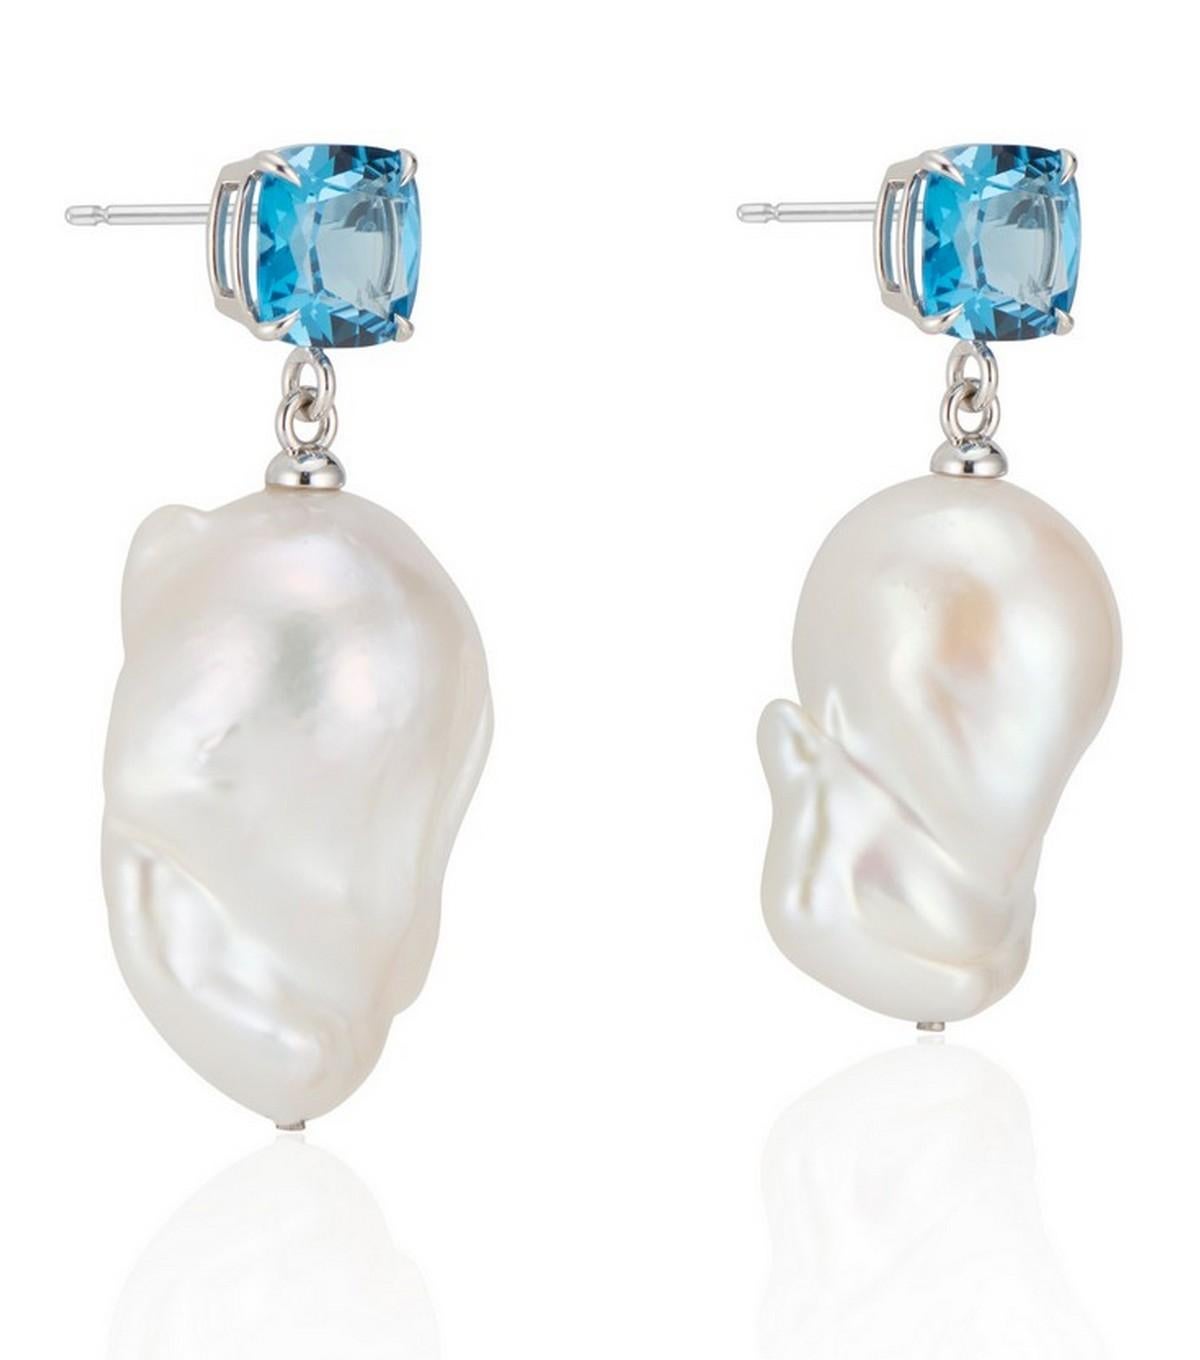 Une étonnante topaze bleue de Londres taillée en coussin est associée à une perle baroque blanche naturelle et lumineuse pour créer une boucle d'oreille romantique.

Les bijoux sont sertis dans un panier en or blanc 14k très poli, avec des griffes